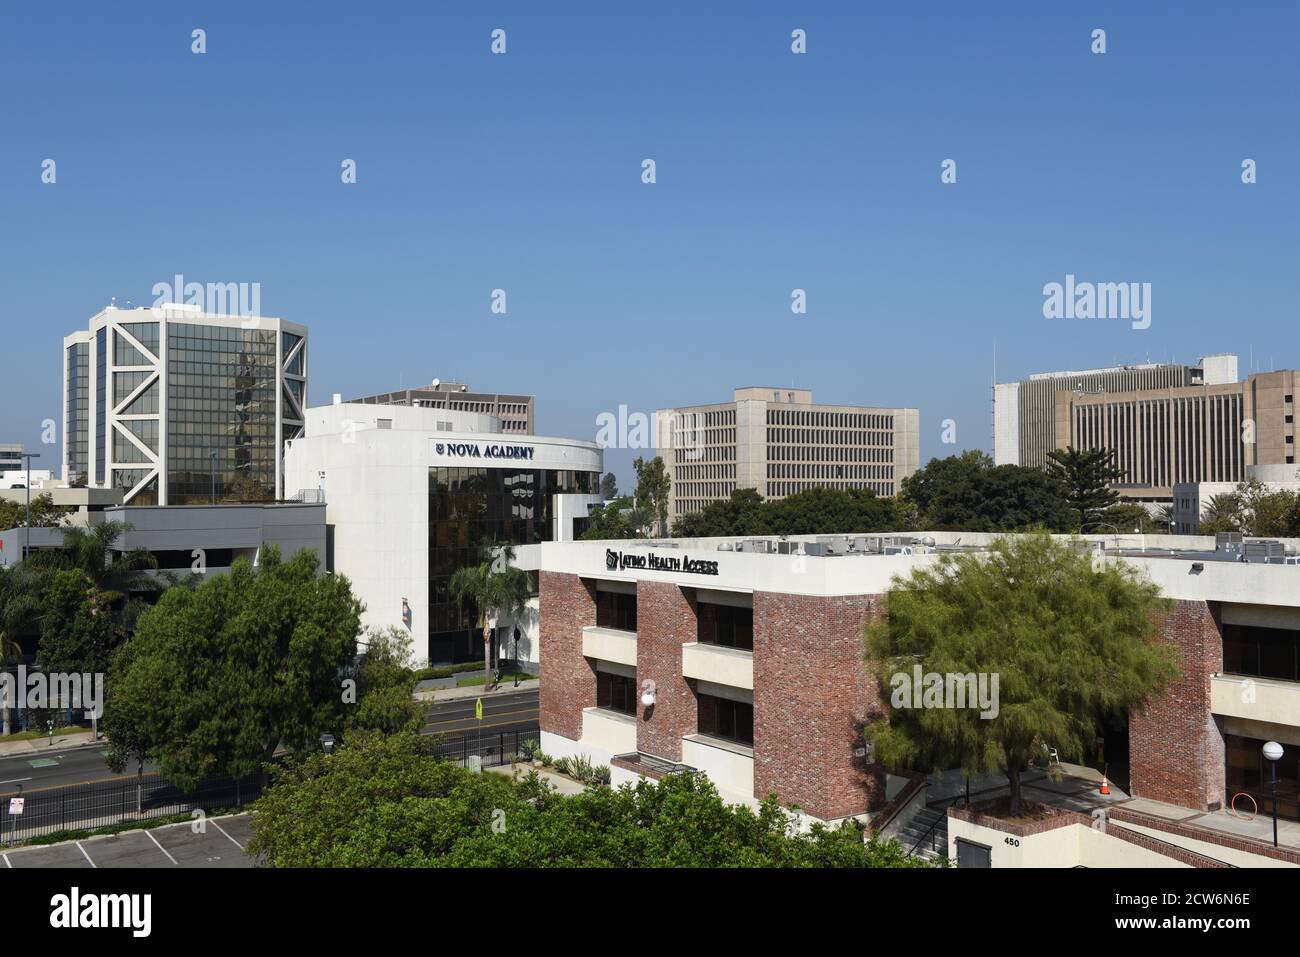 SANTA ANA, KALIFORNIEN - 23. SEPTEMBER 2020: Nova Academy und Regierungsgebäude in der Innenstadt von Santa Ana. Stockfoto